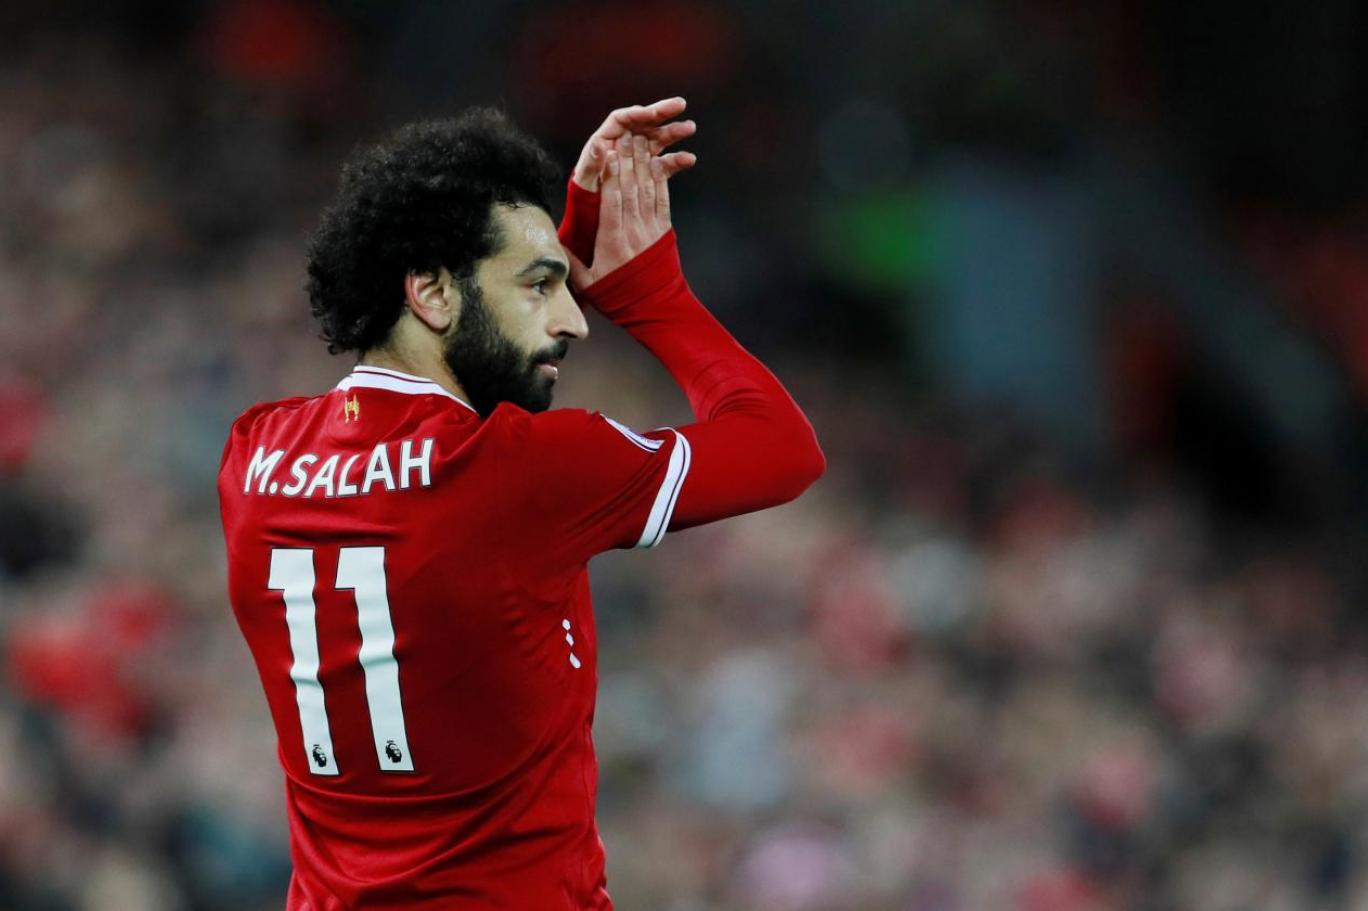 Mohamed Salah a sürpriz talip